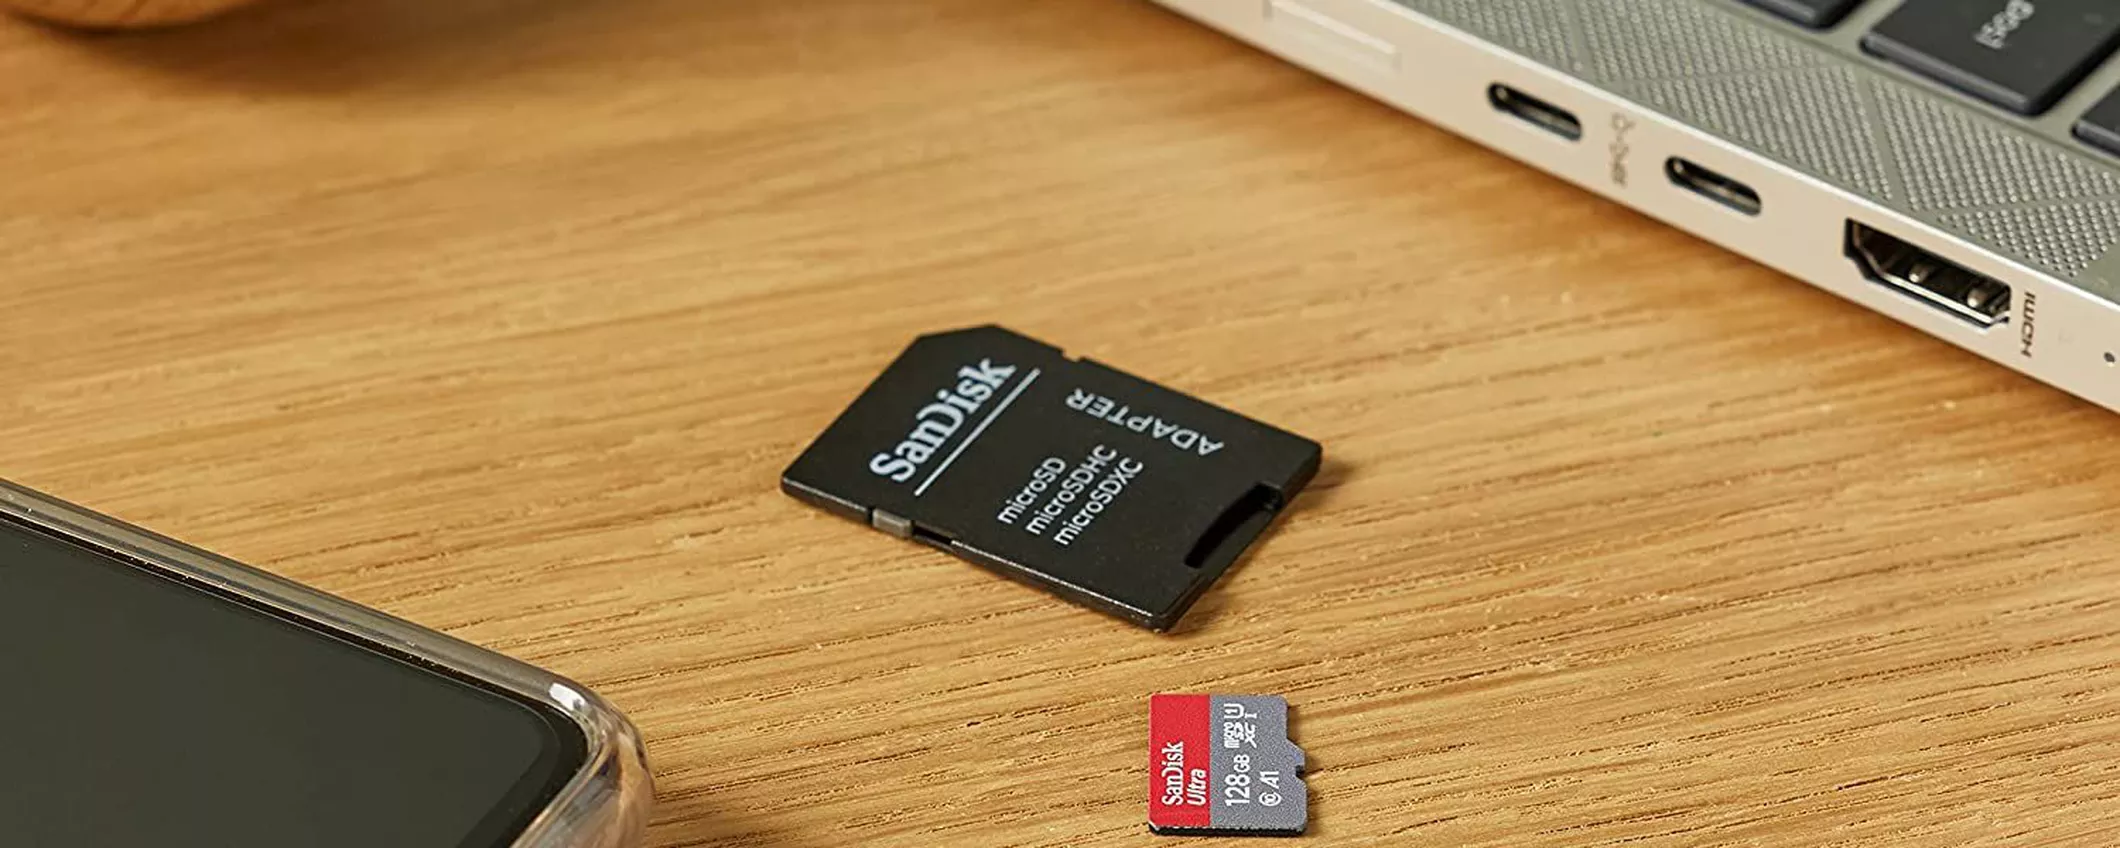 MicroSD SanDisk per Nintendo Switch: spazio ENORME per i tuoi giochi a soli 17 EURO